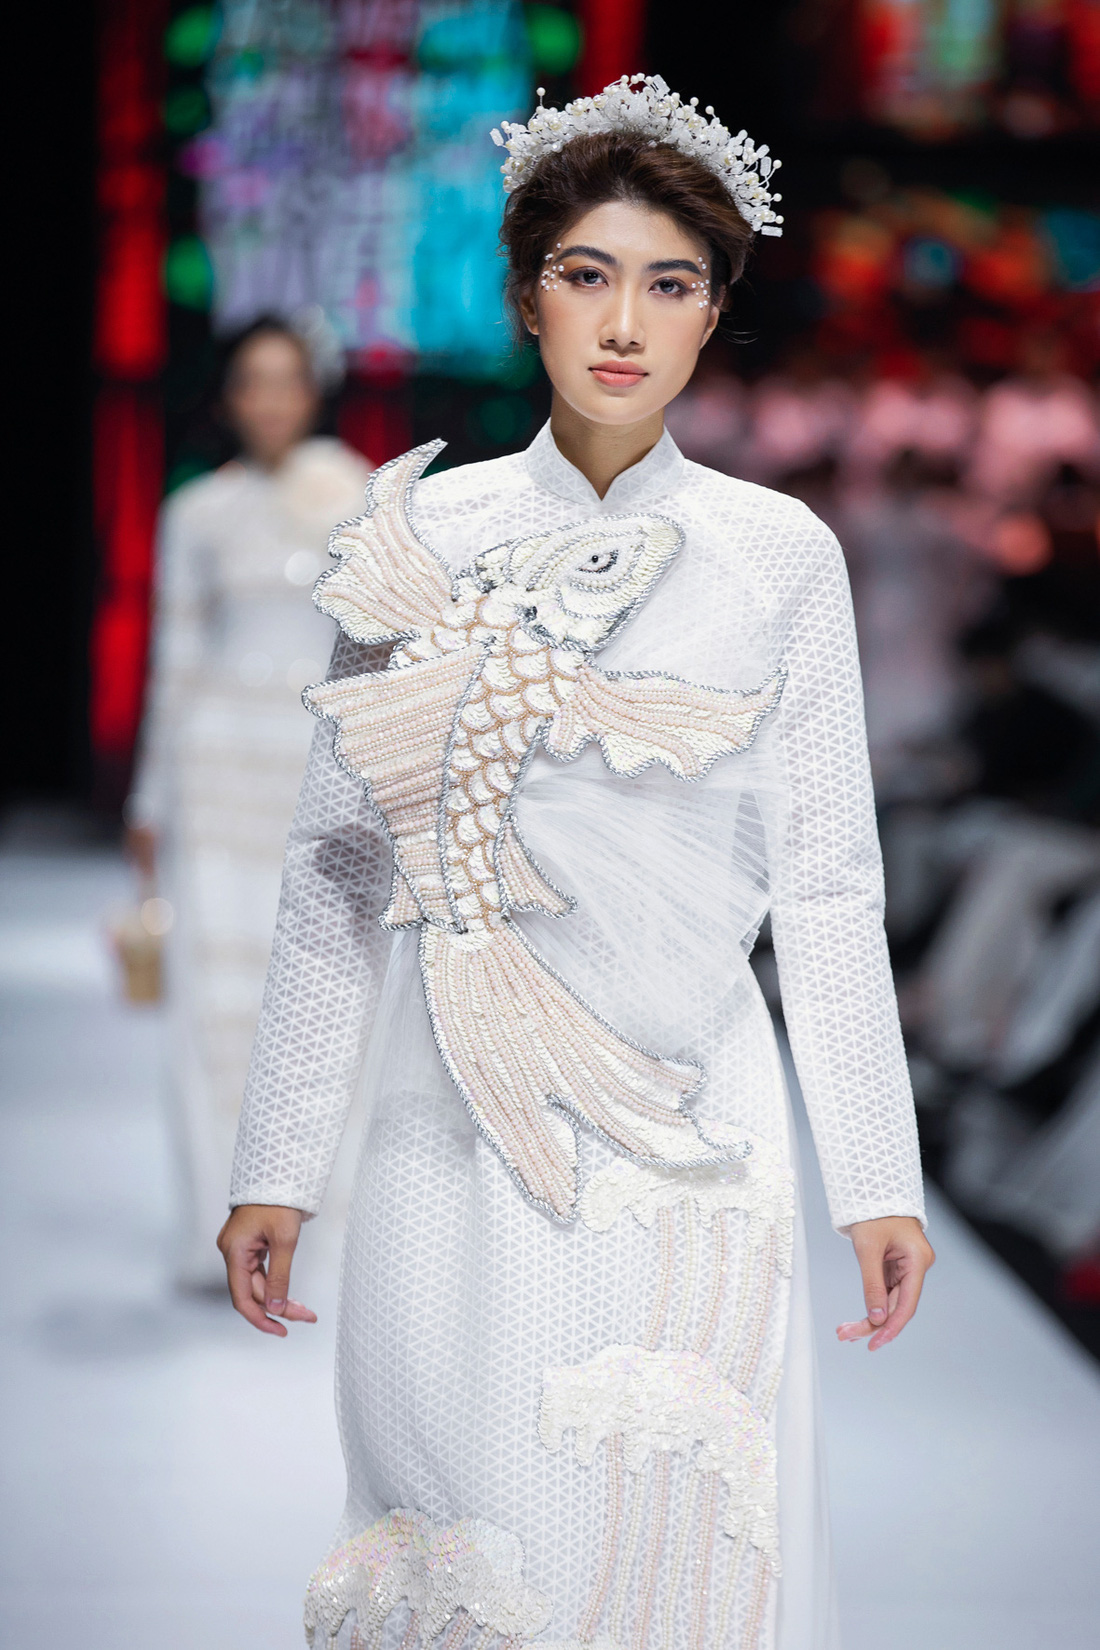 Hoa hậu Khánh Vân làm vedette, NSND Hồng Vân làm người mẫu catwalk cho nhà thiết kế Minh Châu - Ảnh 10.